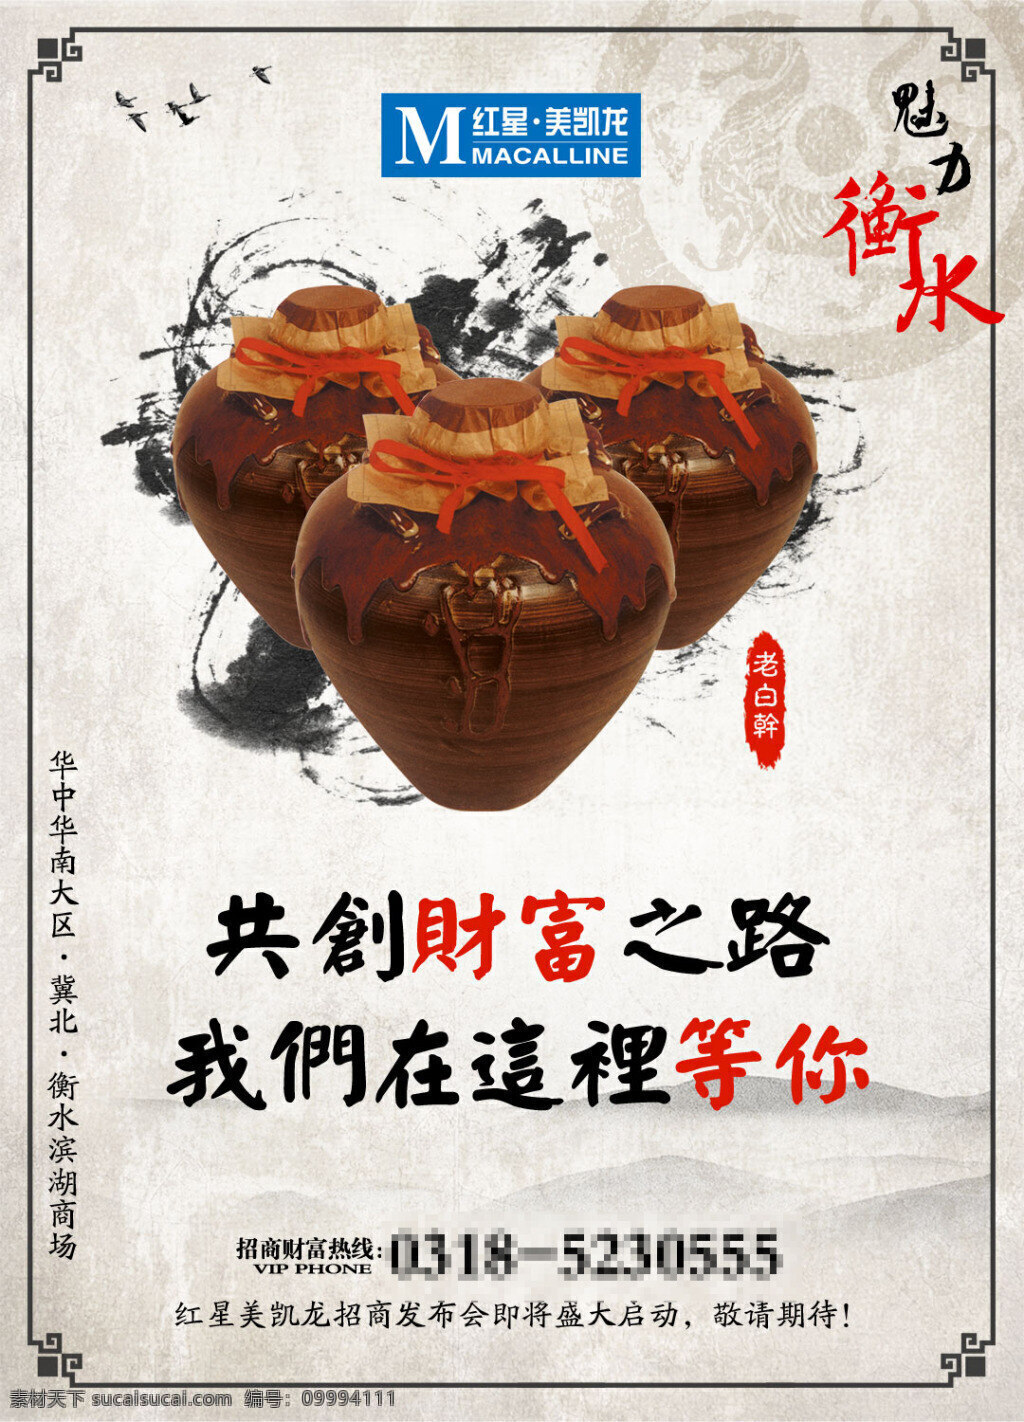 魅力 衡水 老白干 中国 风 传统文化海报 传统文化 复古海报设计 海报素材 广告设计模板 psd素材 白色